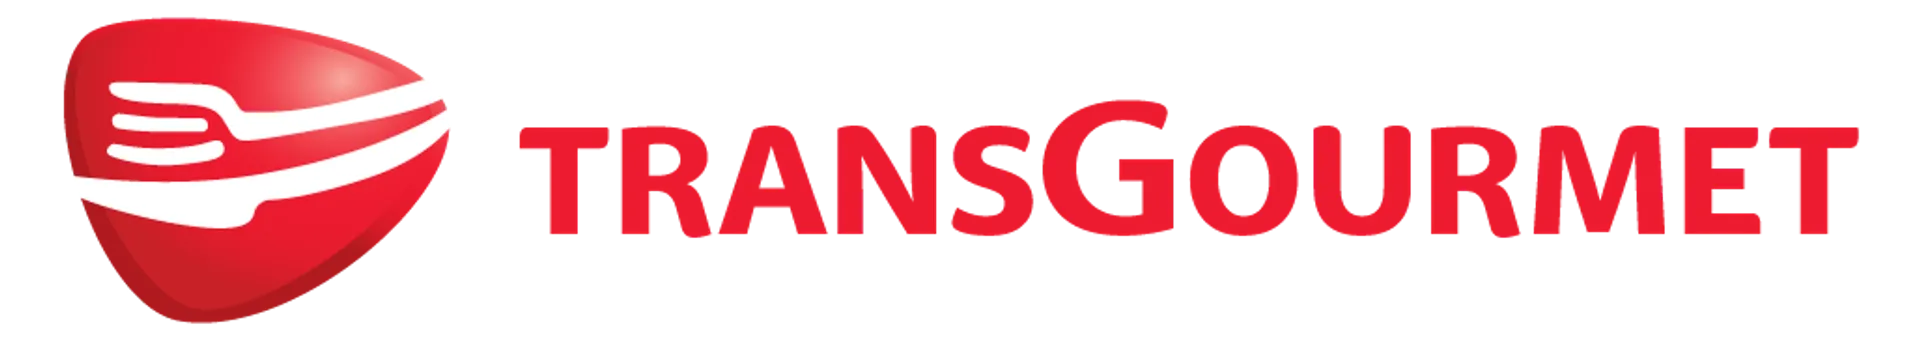 TRANSGOURMET logo die aktuell Flugblatt